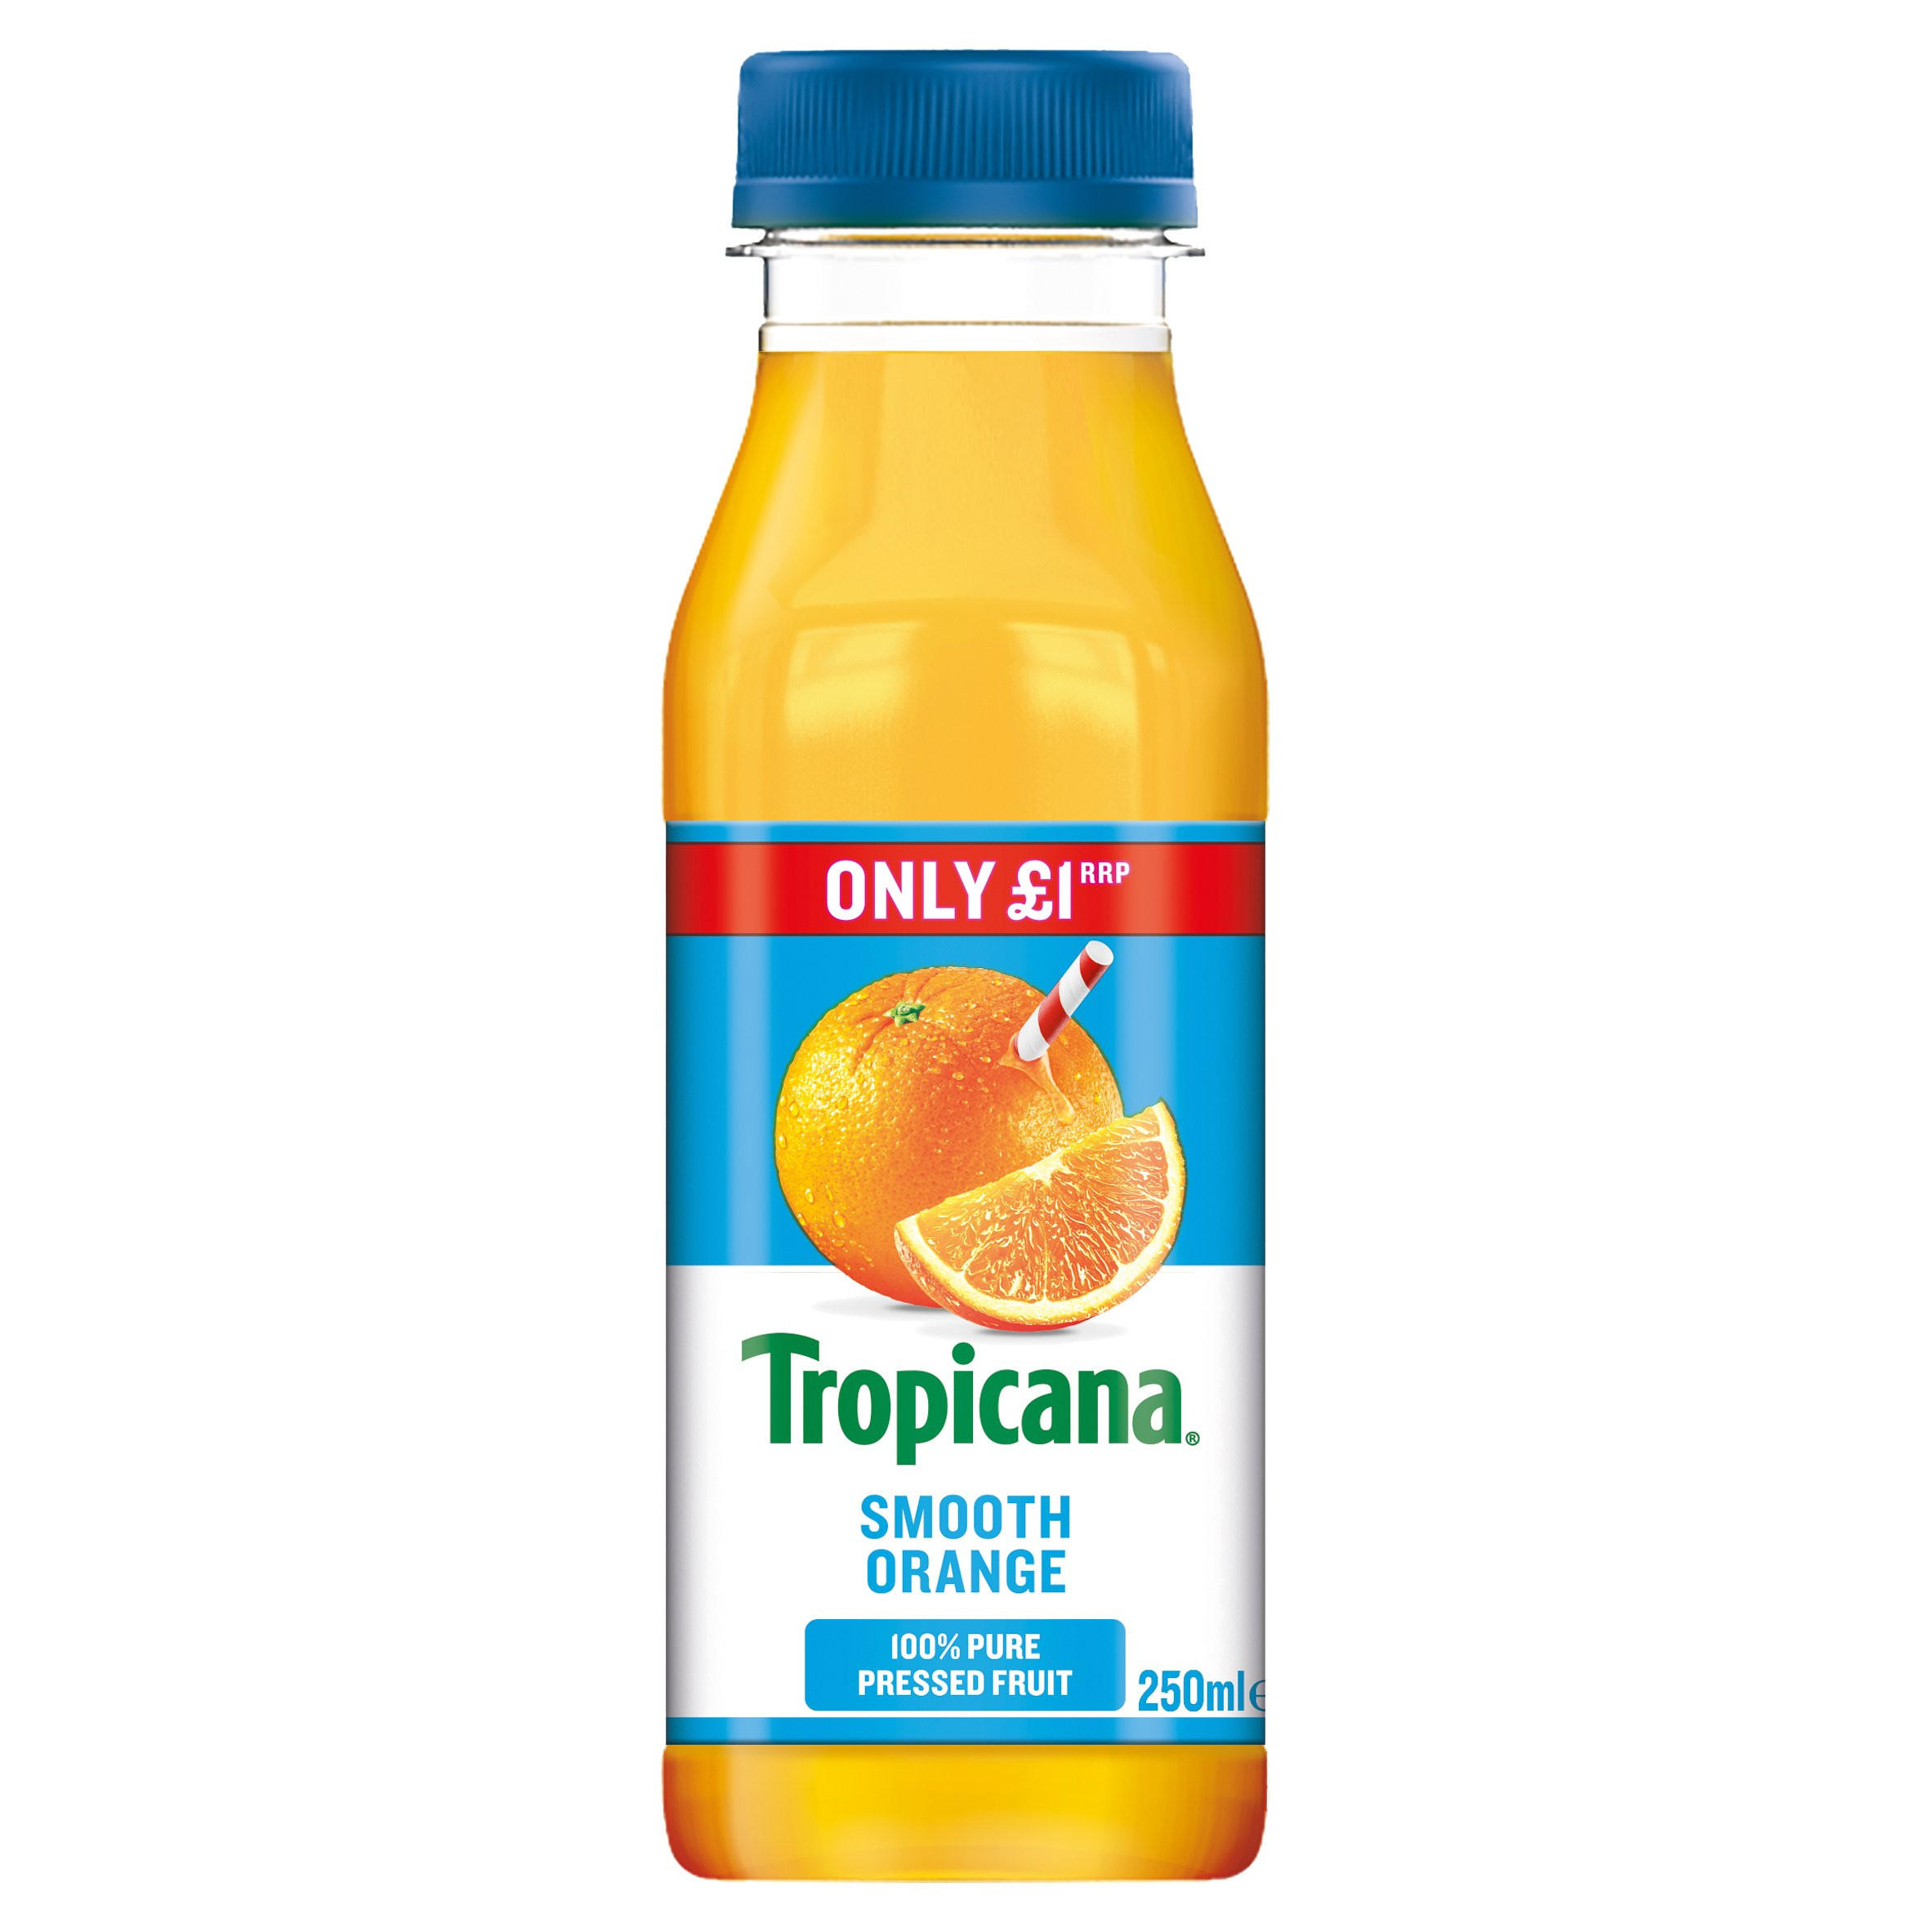 tropicana apple juice prices